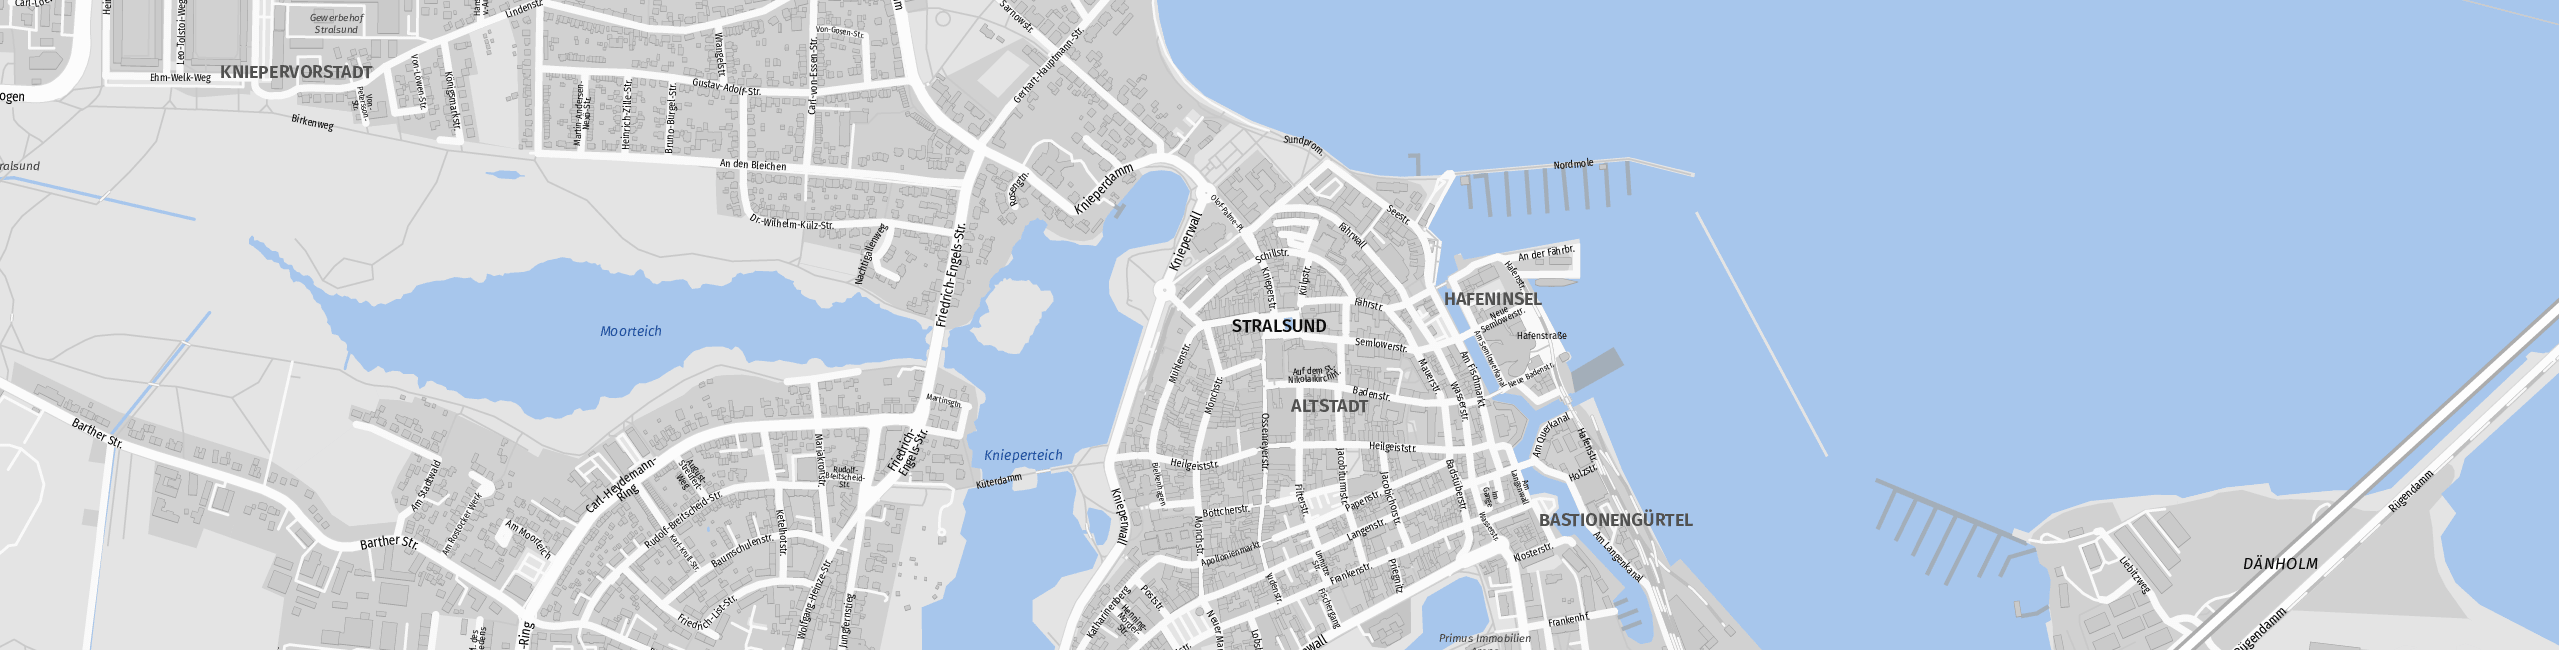 Stadtplan Stralsund zum Downloaden.